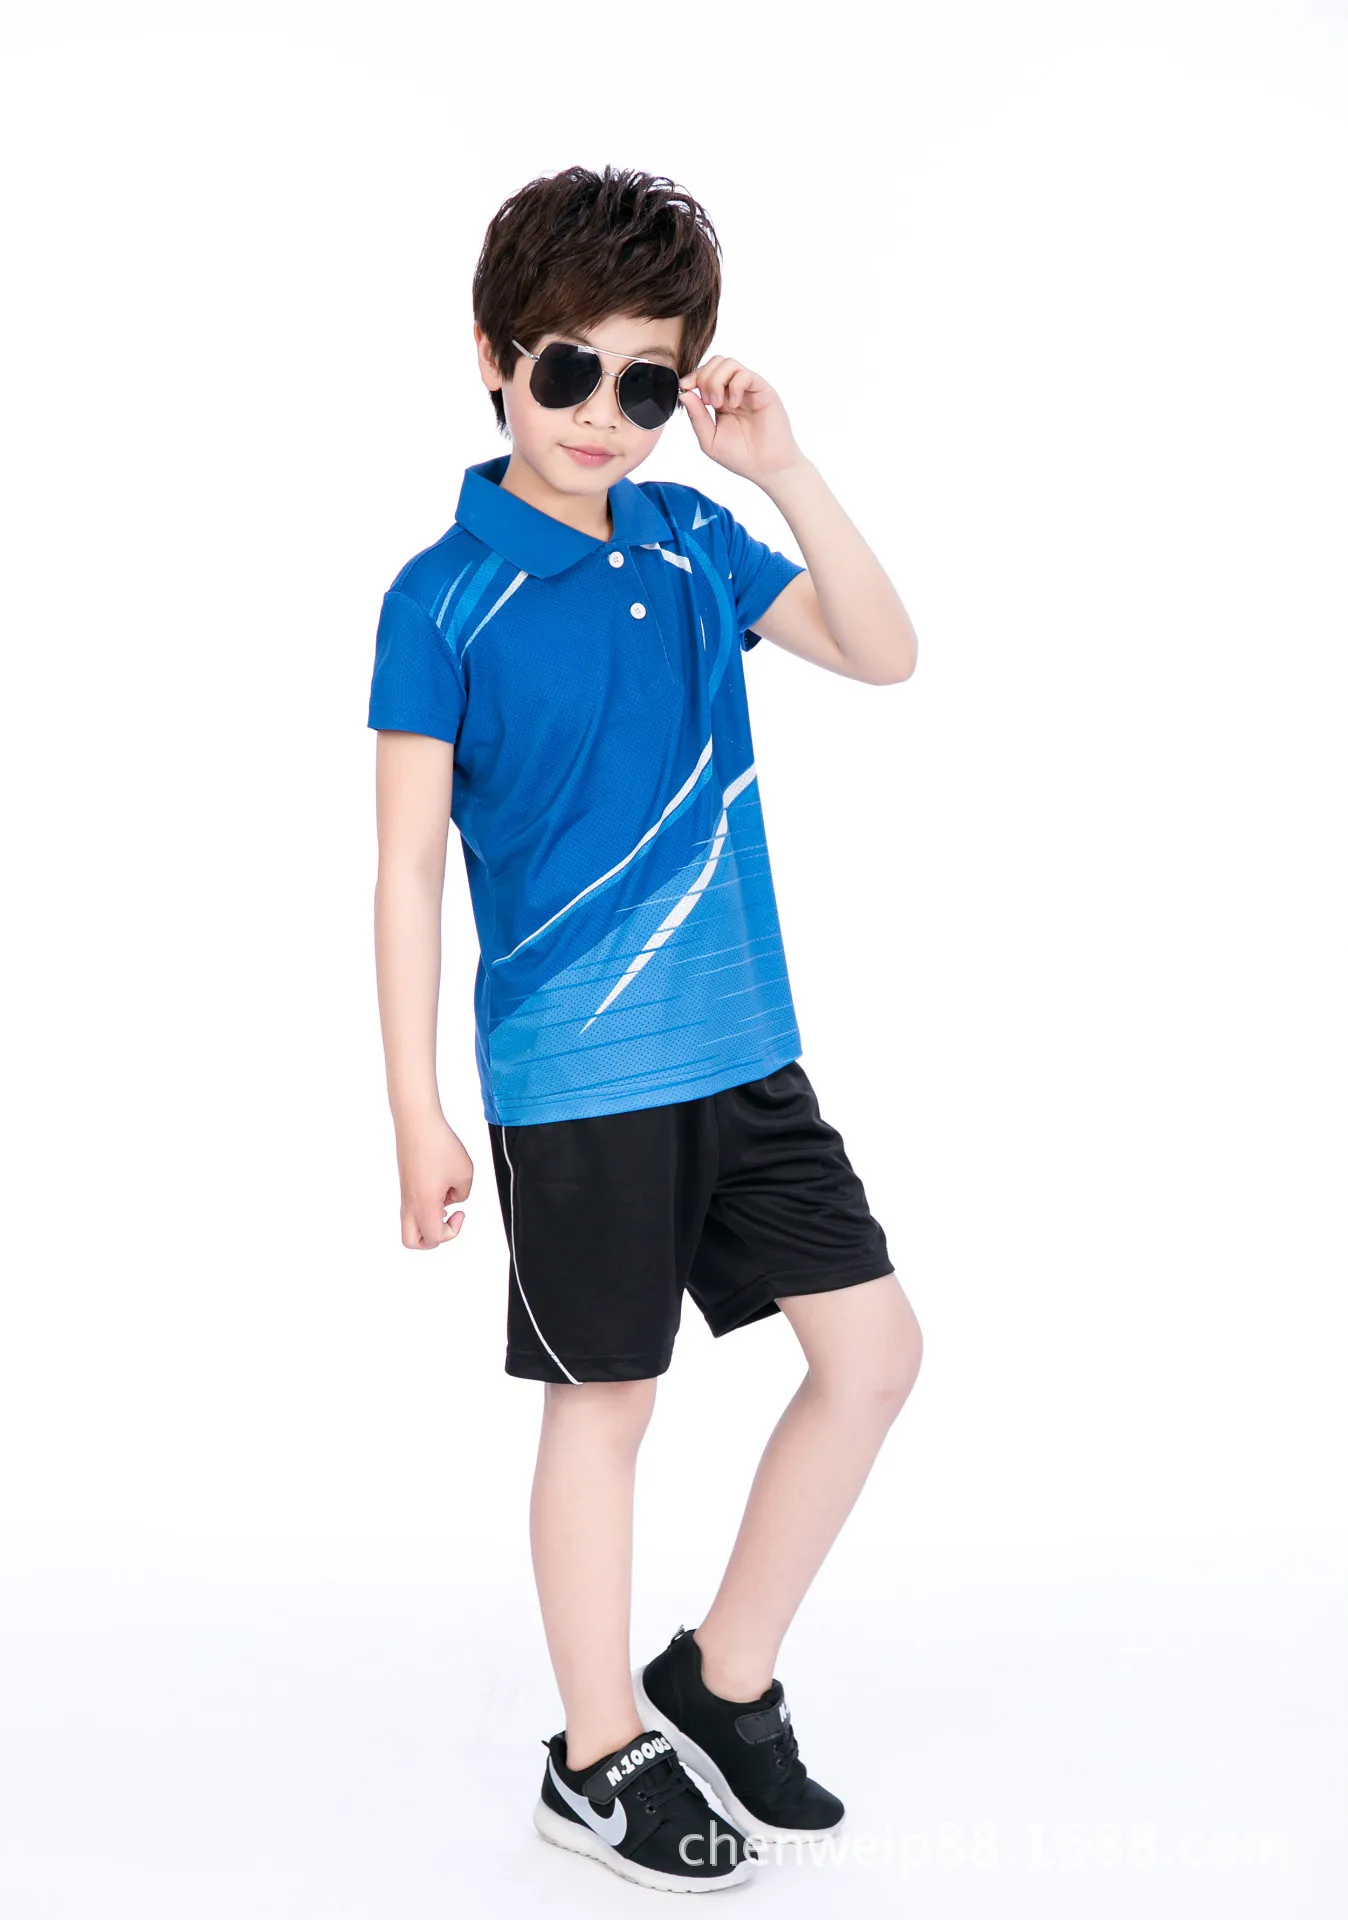 Обувь для мальчиков Бадминтон рубашка с лацканами Шорты для женщин Костюмы, Tenis masculino, малыш настольным теннисом рубашка Джерси, фитнес-спортивной костюм Спортивная рубашка - Цвет: children Blue suit